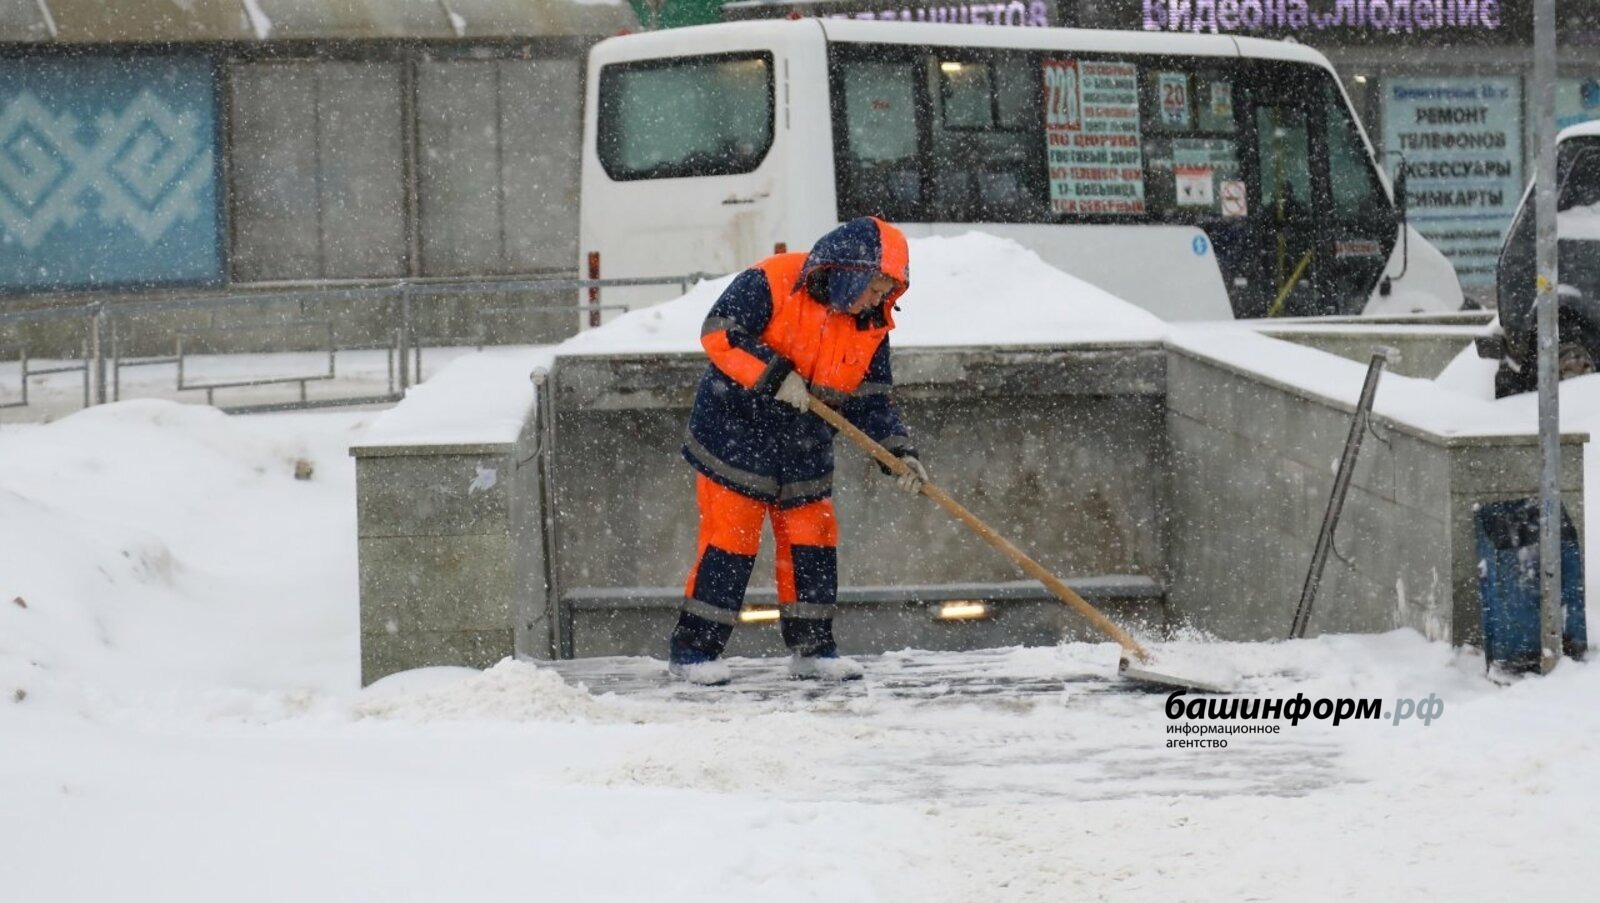 За неубранные снег и лед в Башкирии можно получить штраф до 100 тысяч рублей